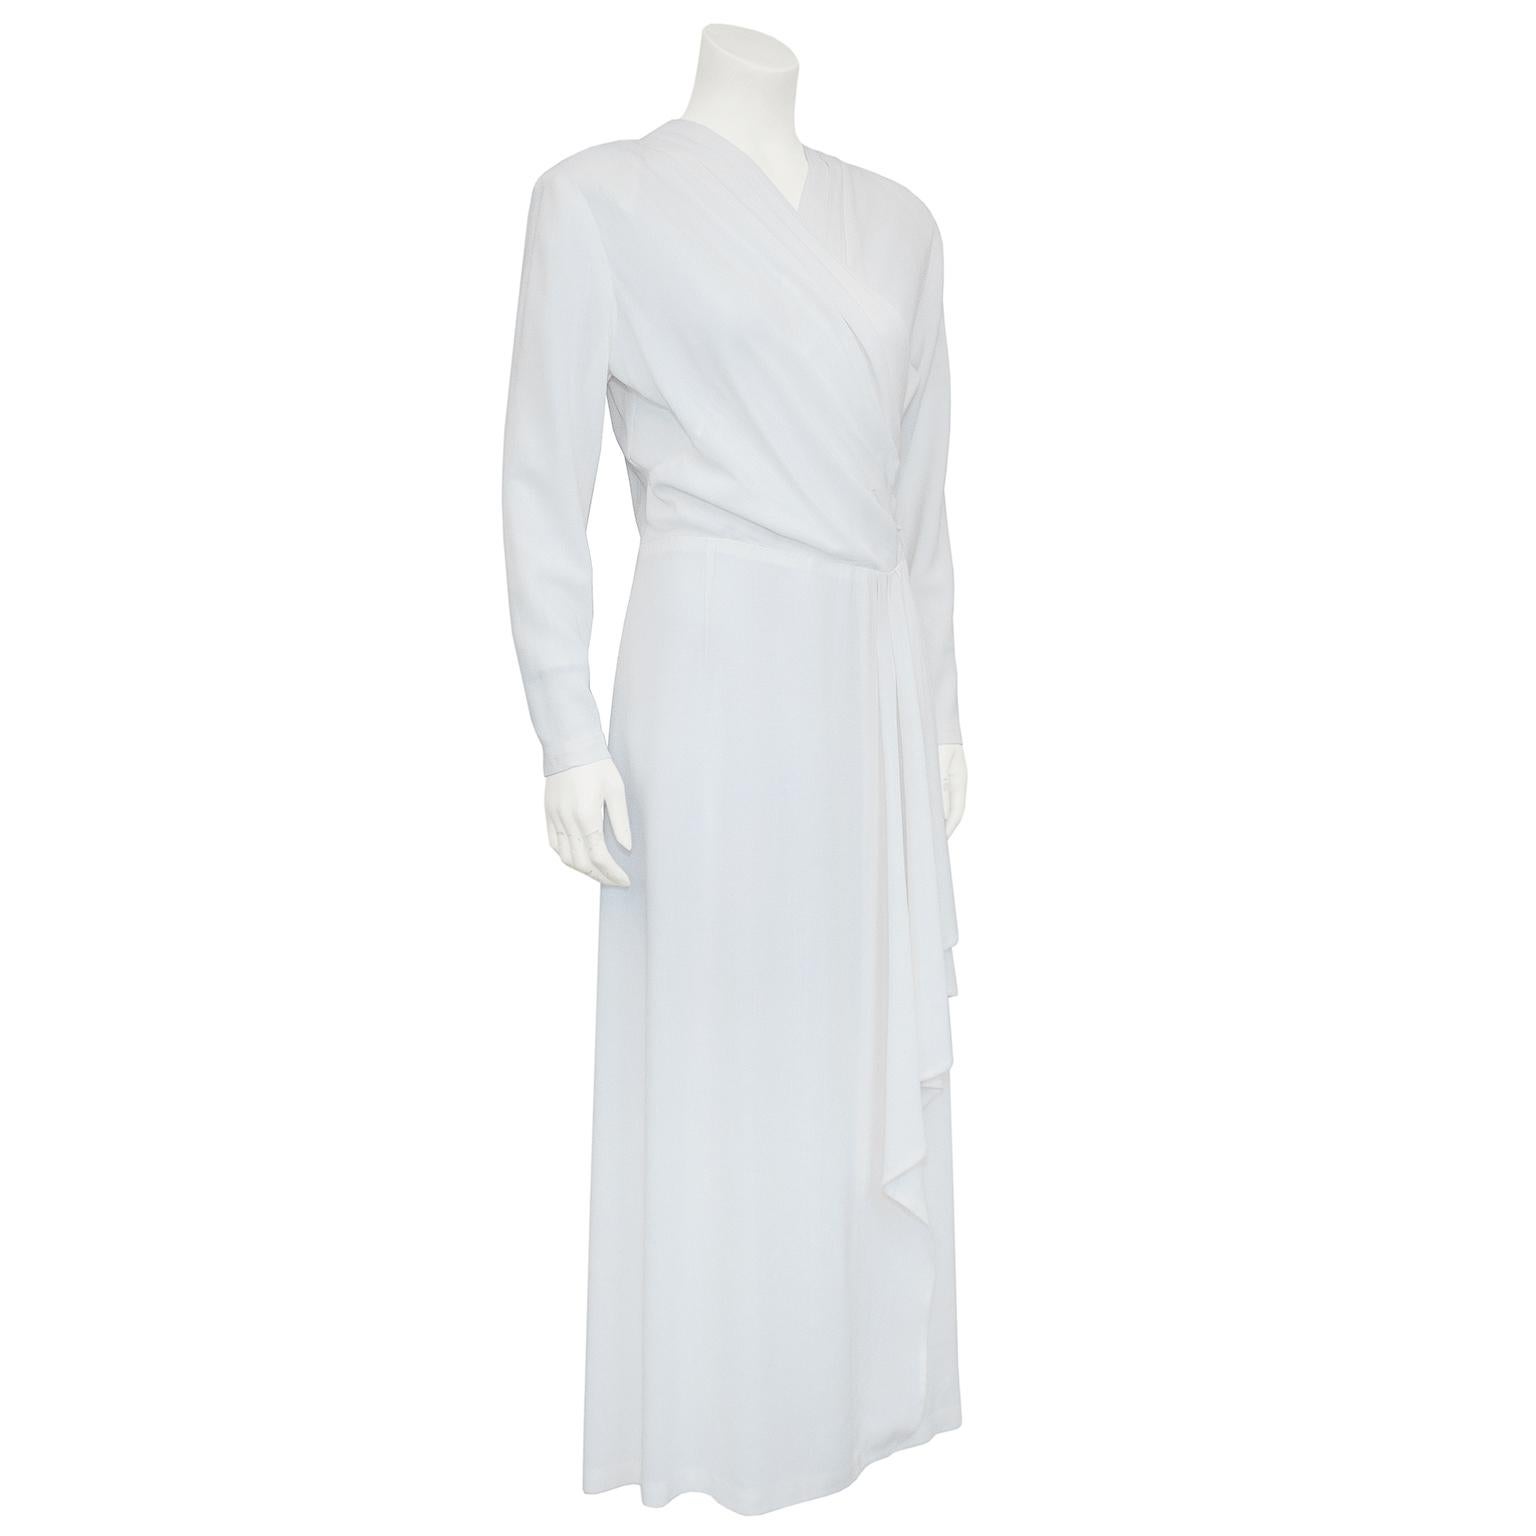 robe des années 1940 en crêpe de rayonne blanc, style vieil Hollywood, avec drapé. Le corsage est légèrement froncé sur le devant, ajusté à la taille, longueur mi-mollet. Il est rare de trouver une robe blanche des années 1940 en si bon état. La